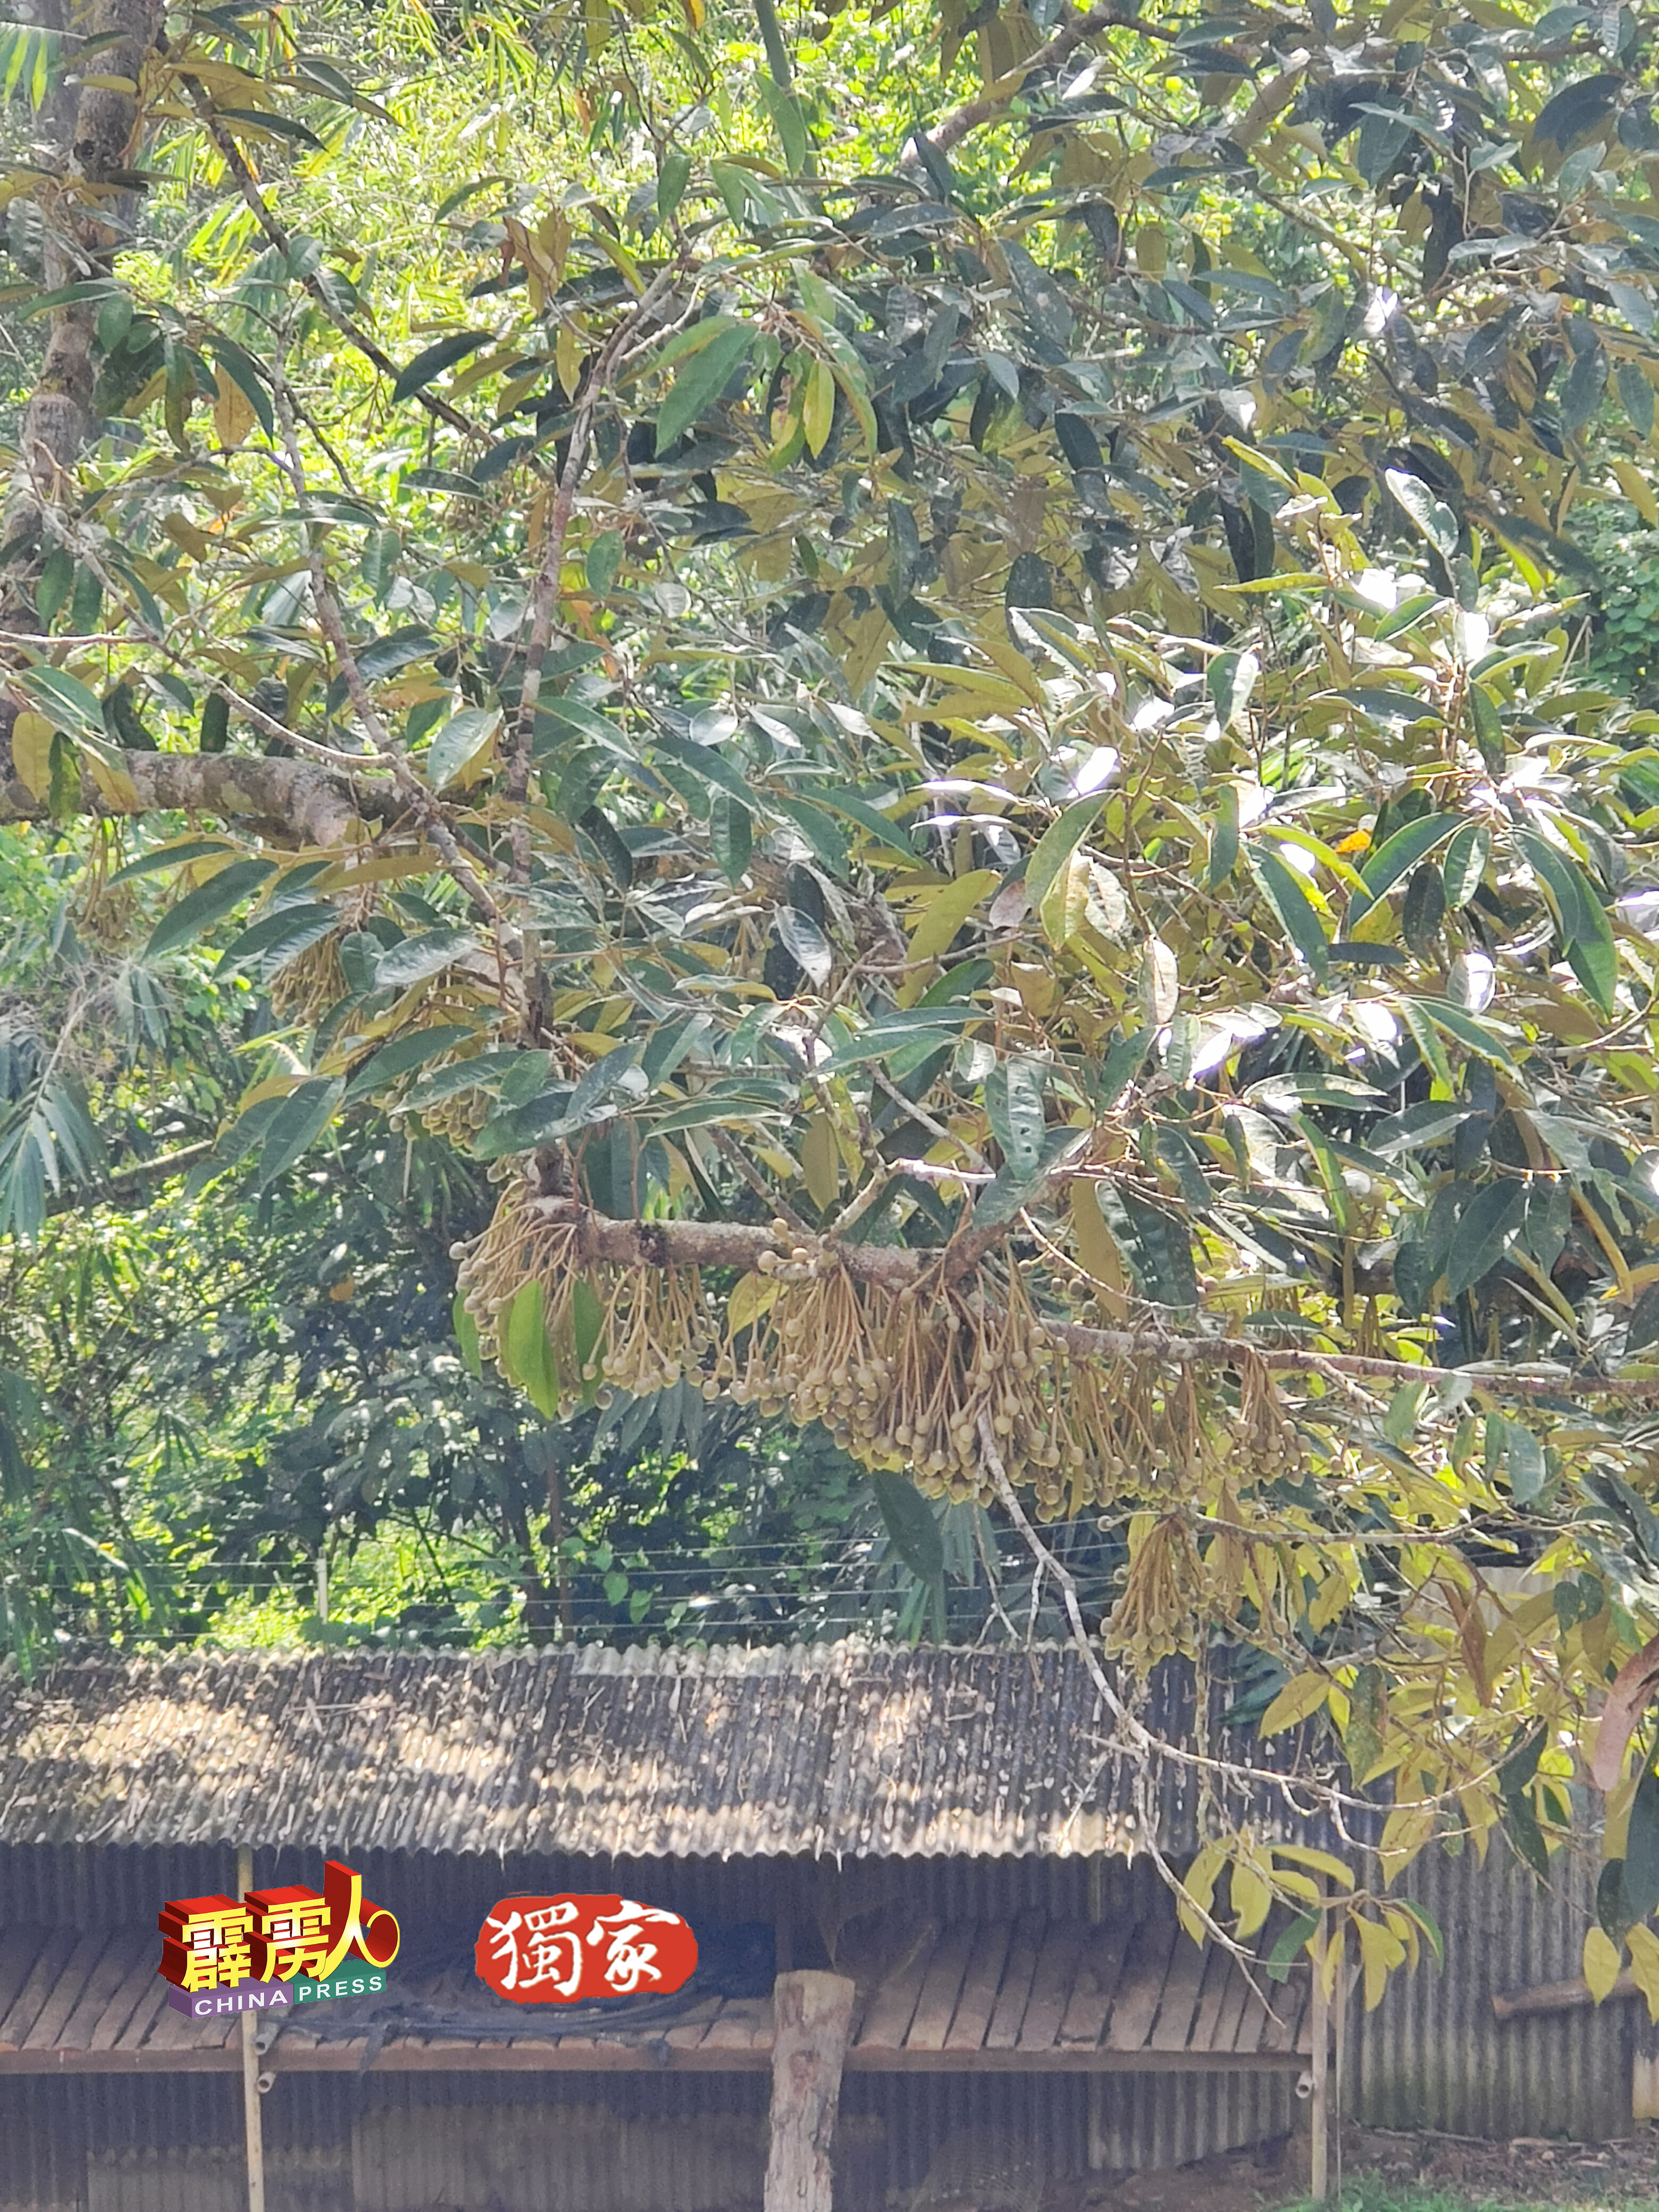 甘榜榴槤品种的老树，长满果实，预计7月会大唱丰收。